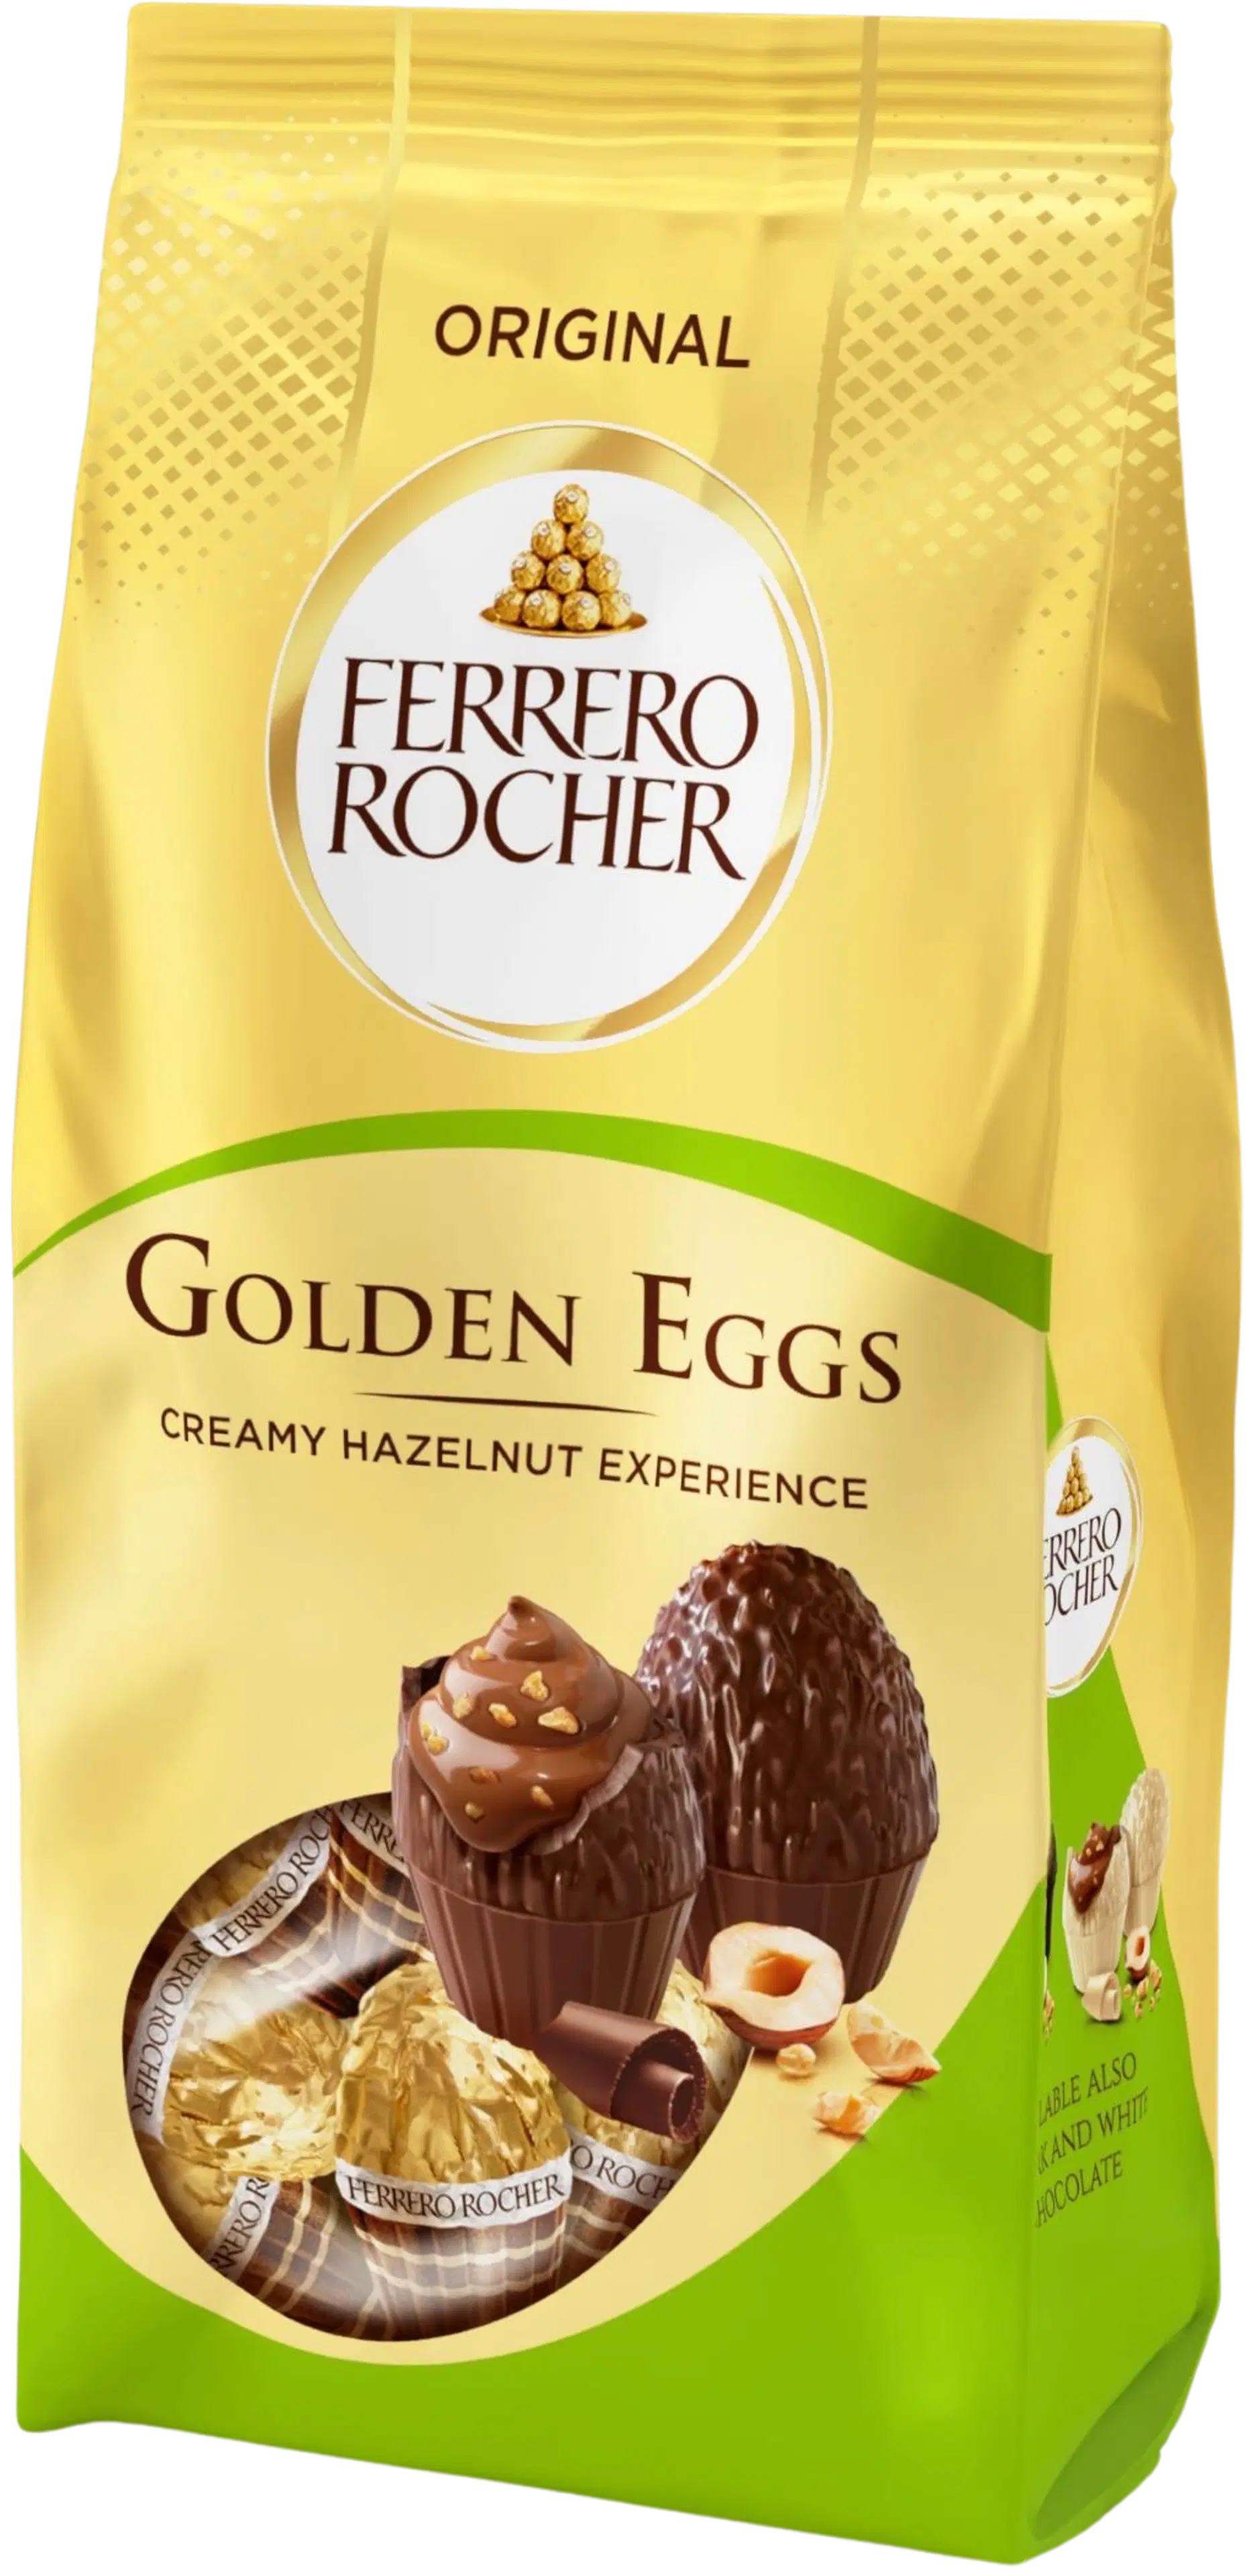 Ferrero Rocher Golden-suklaatäytemunia 90g. Maitosuklaata hasselpähkinä-kaakaotäytteellä (36,5 %), jossa hasselpähkinä- ja vehnärouhetta.